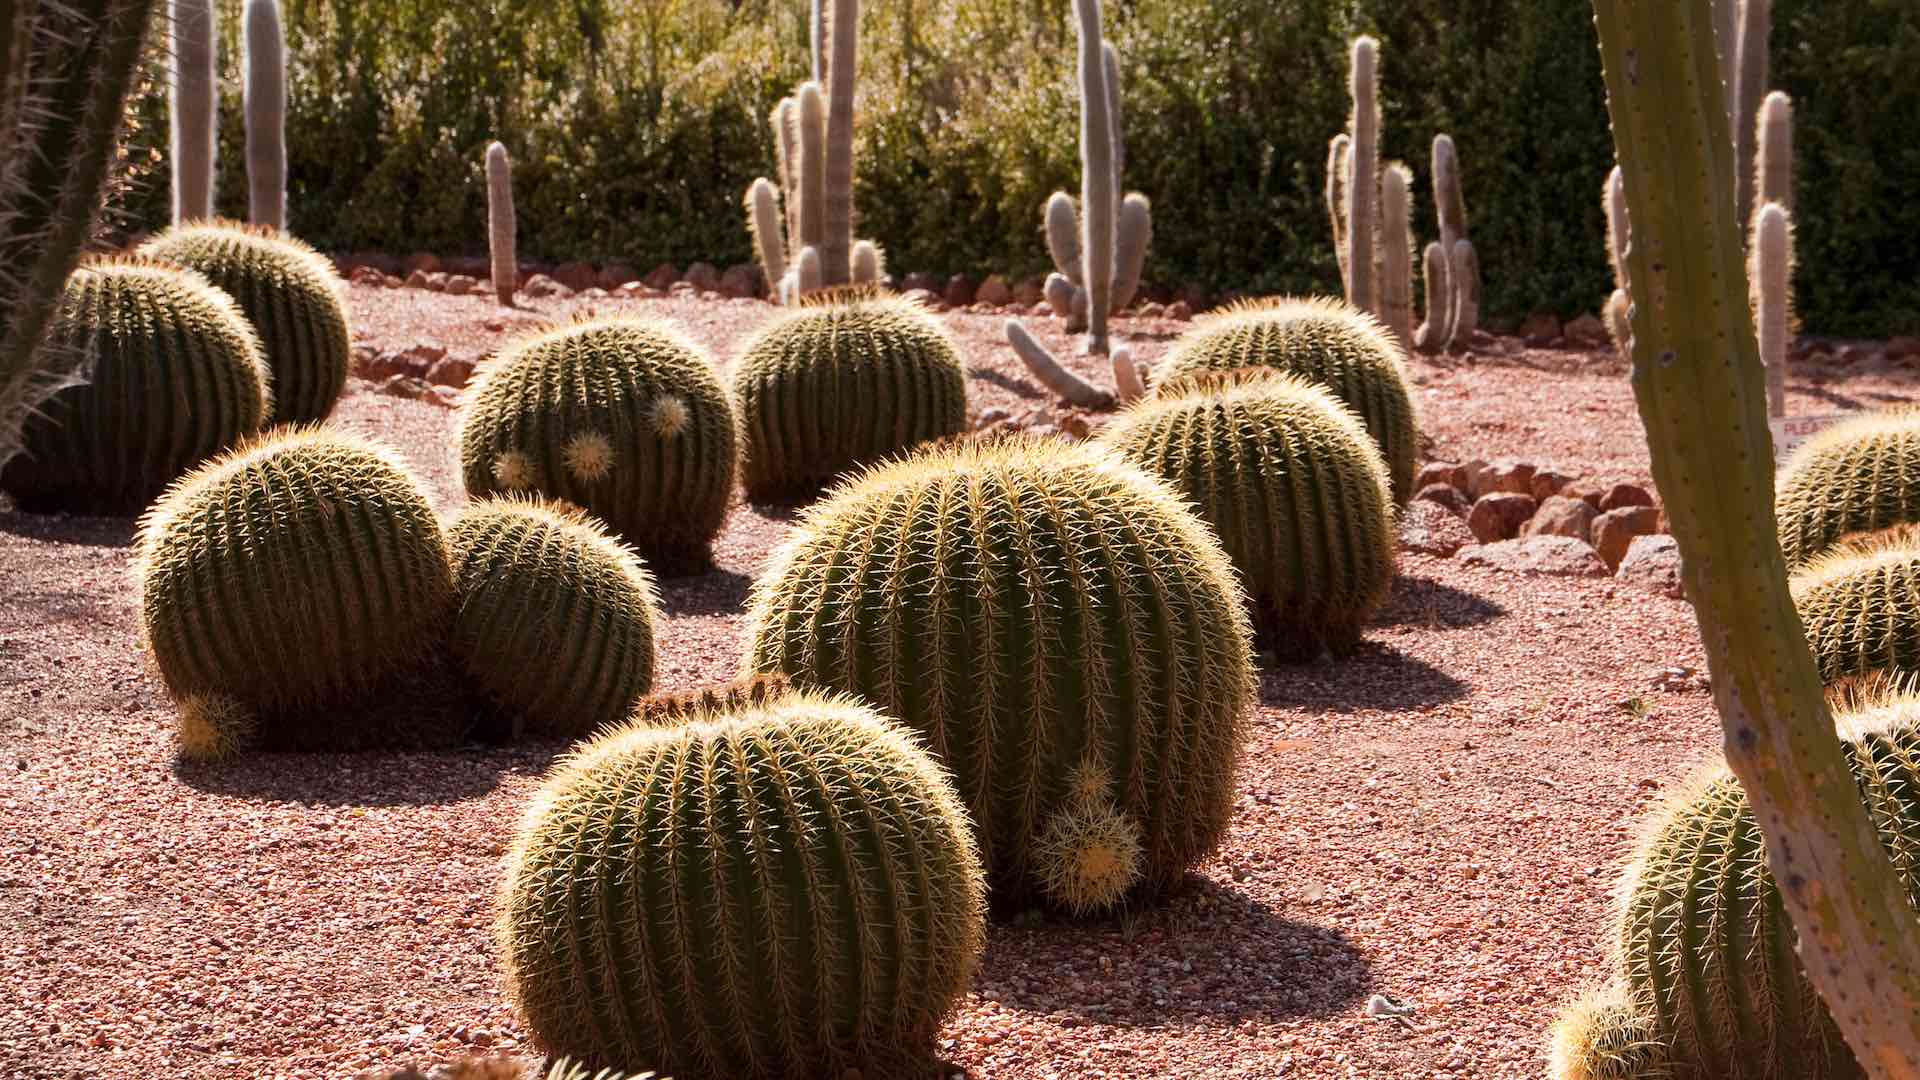 Bevan's Cactus Nursery